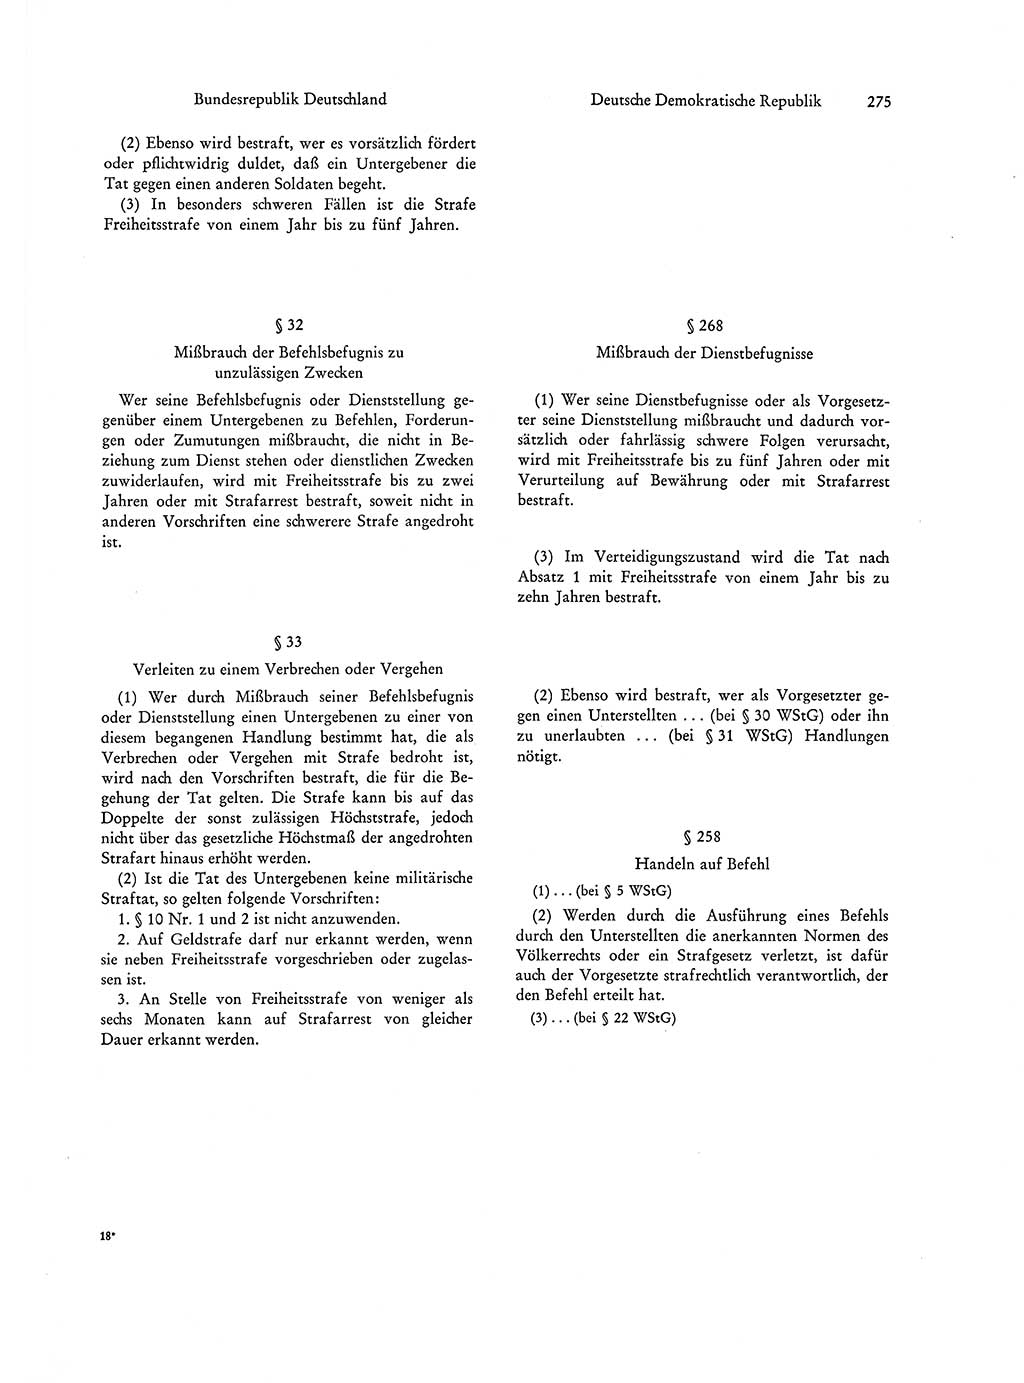 Strafgesetzgebung in Deutschland [Bundesrepublik Deutschland (BRD) und Deutsche Demokratische Republik (DDR)] 1972, Seite 275 (Str.-Ges. Dtl. StGB BRD DDR 1972, S. 275)